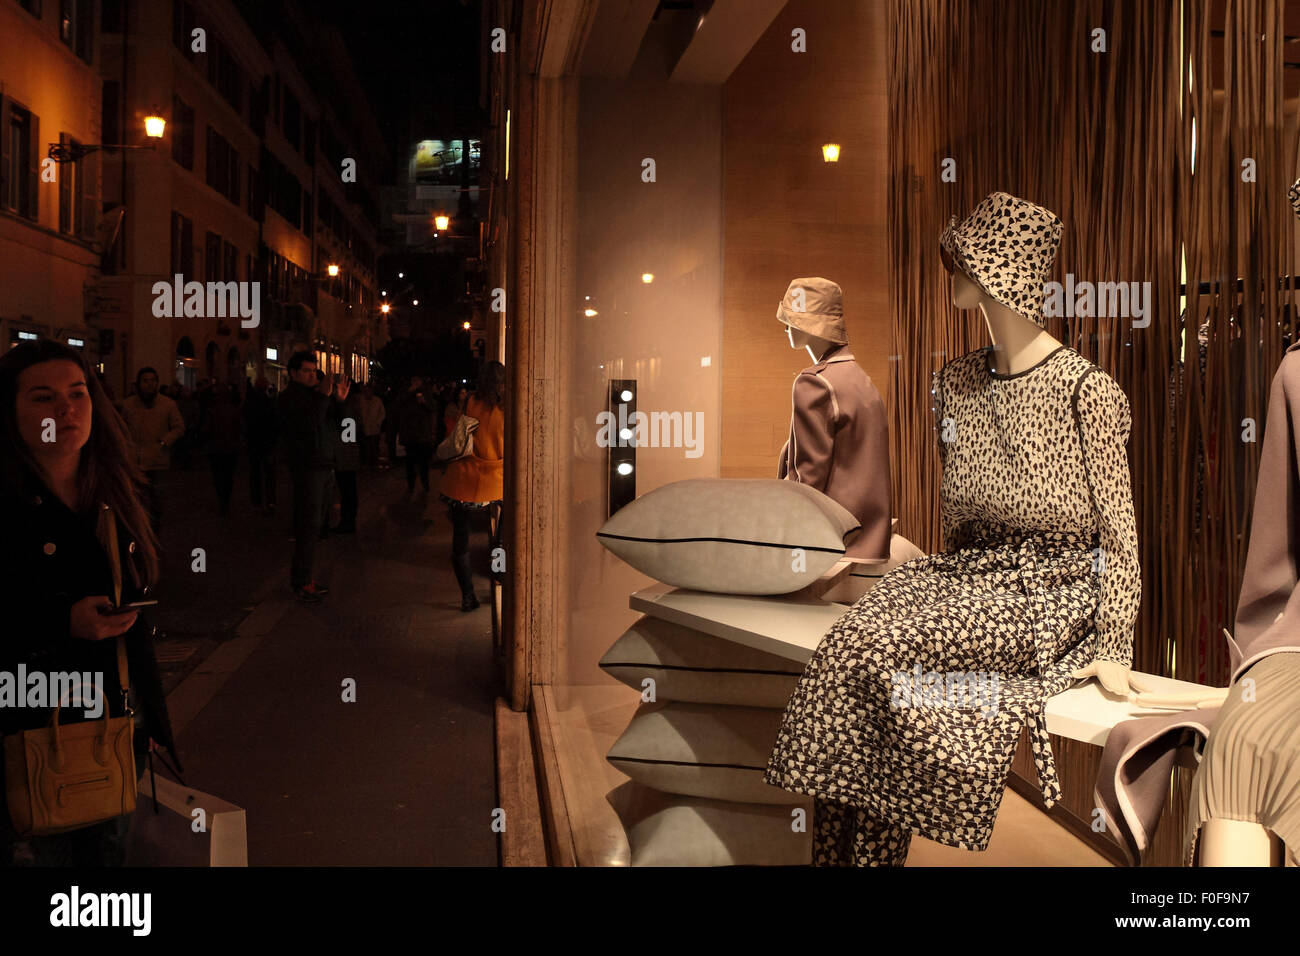 La nuit, la fenêtre shopping dans une boutique de mode haut de gamme sur via Condotti, Rome, Italie. Banque D'Images